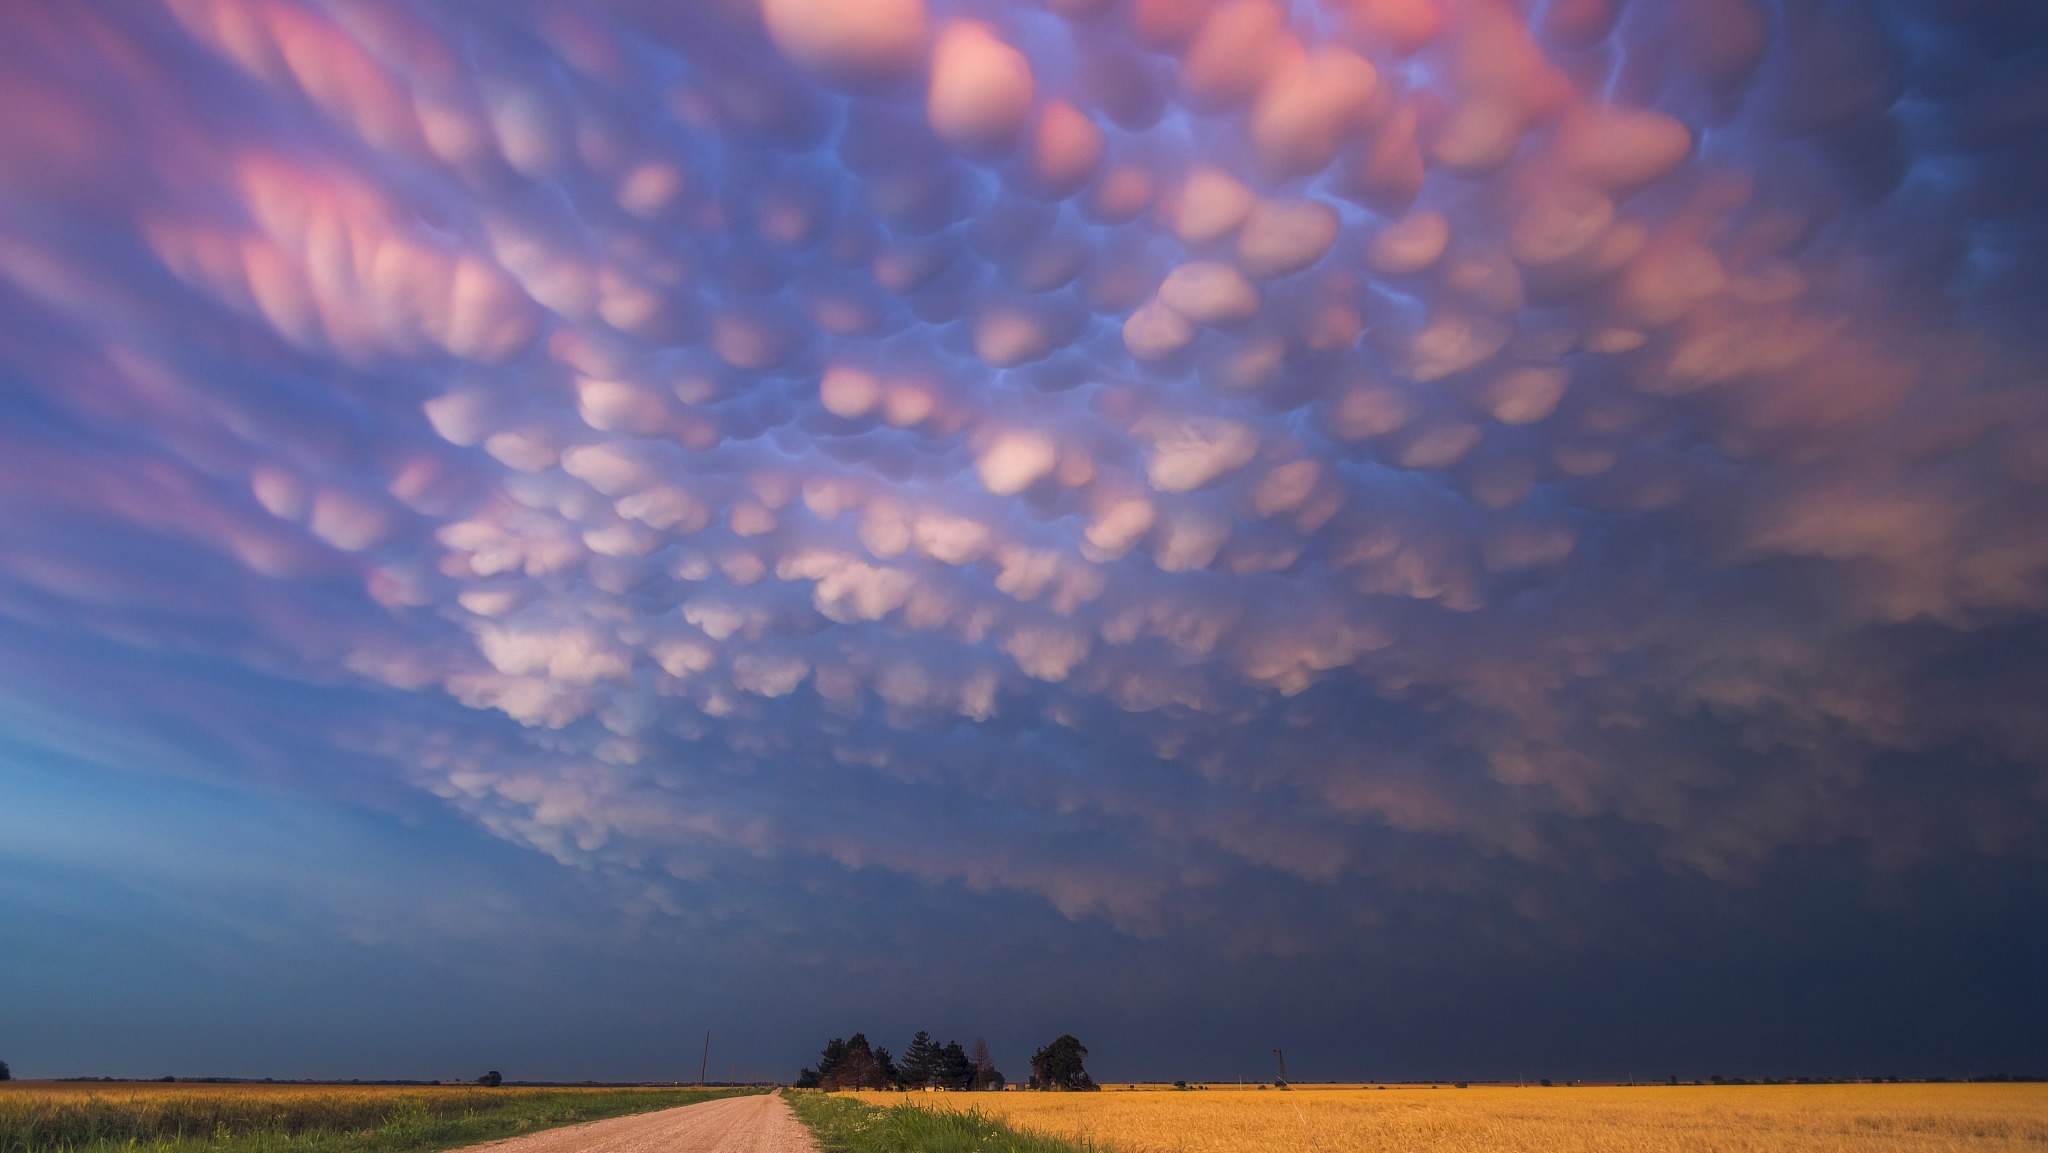 Употребление небом. Вымеобразные облака (Mammatus cloud). Вымеобразные трубчатые облака. Облака мамматус атмосферное явление. Красивое небо.